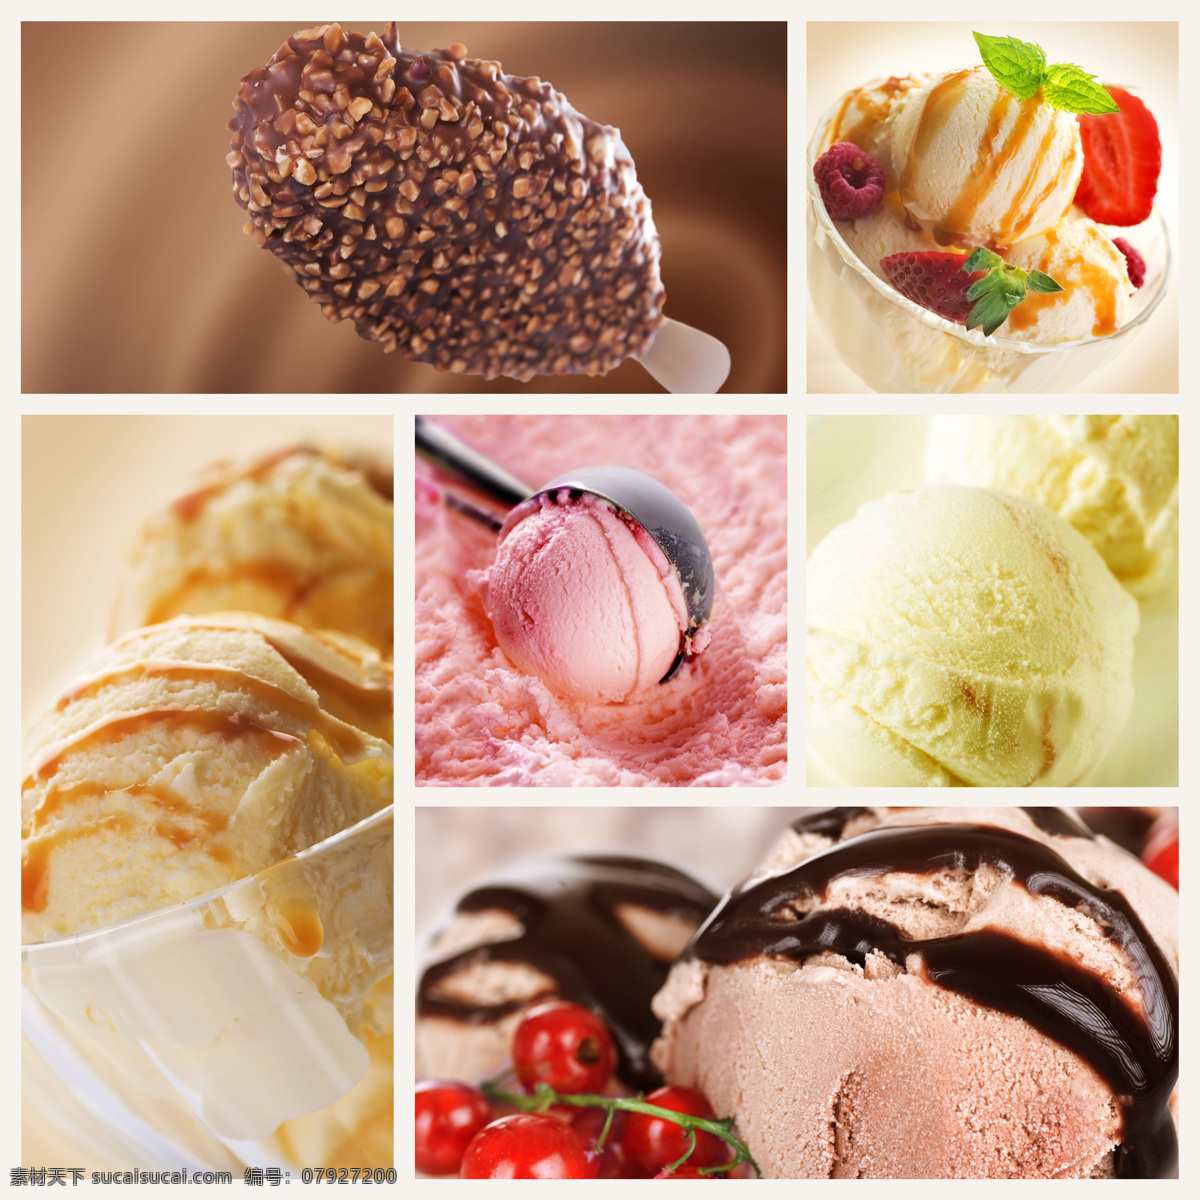 冰淇淋 美味 冰激凌 甜品美食 食物摄影 点心图片 餐饮美食